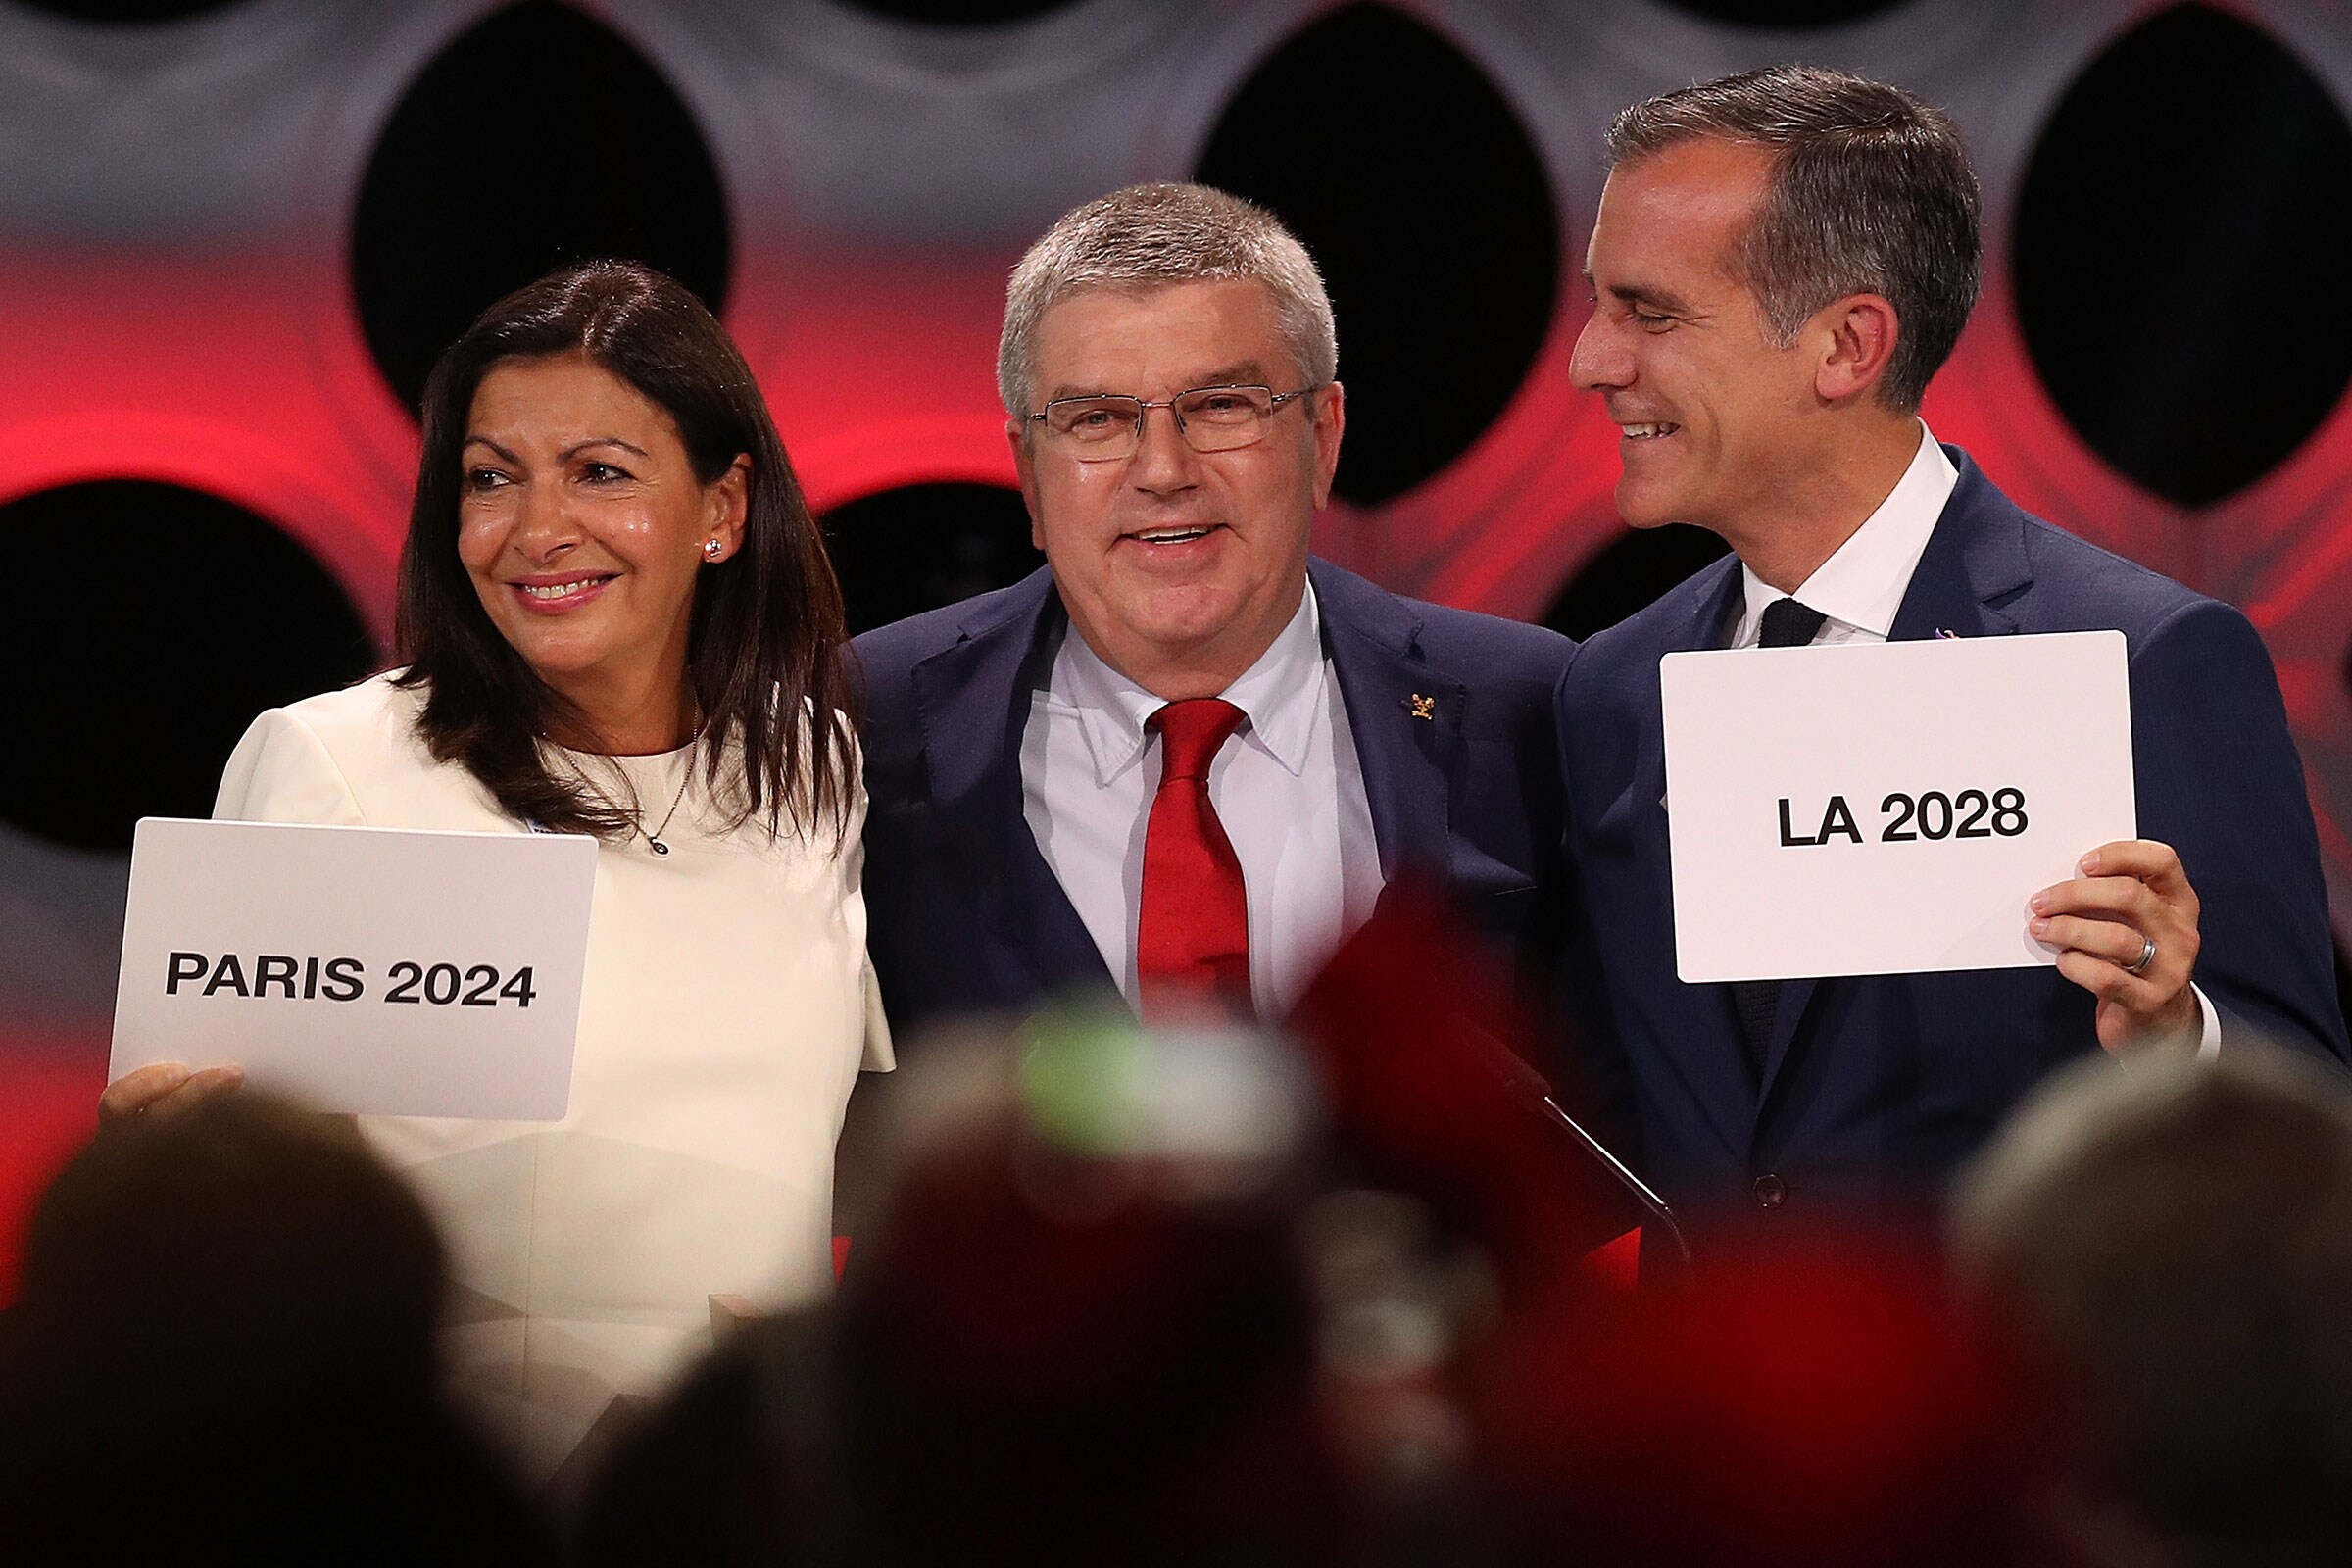 Le président du CIO Thomas Bach lors de l'élection de Paris 2024 et LA 2028 comme villes hôtes.